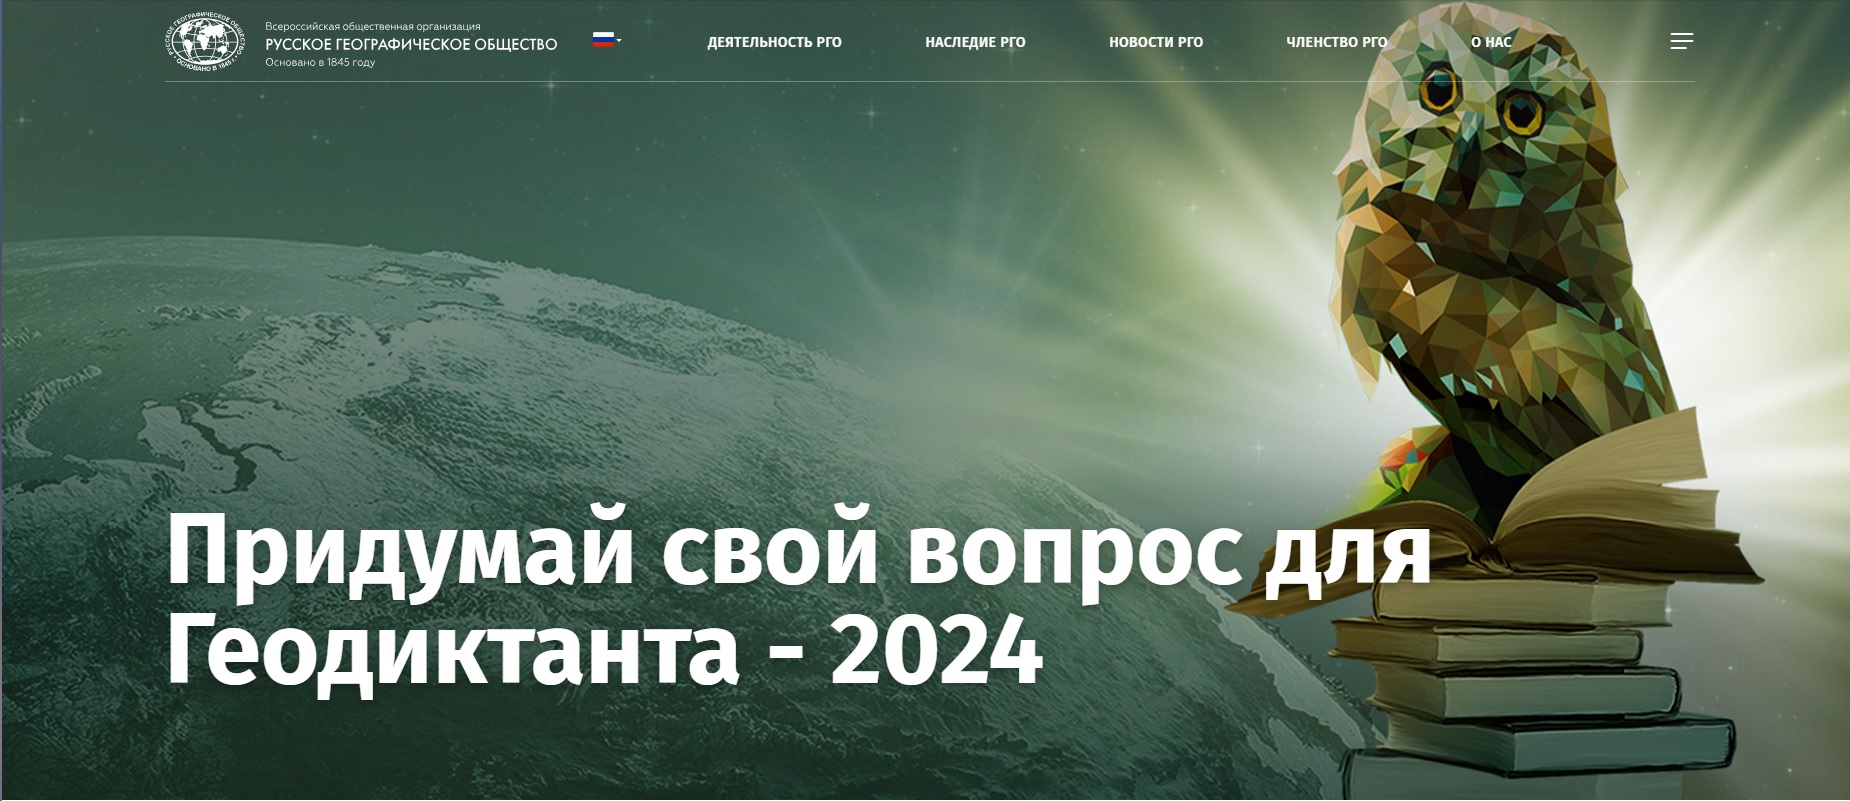 geo vopros-2024